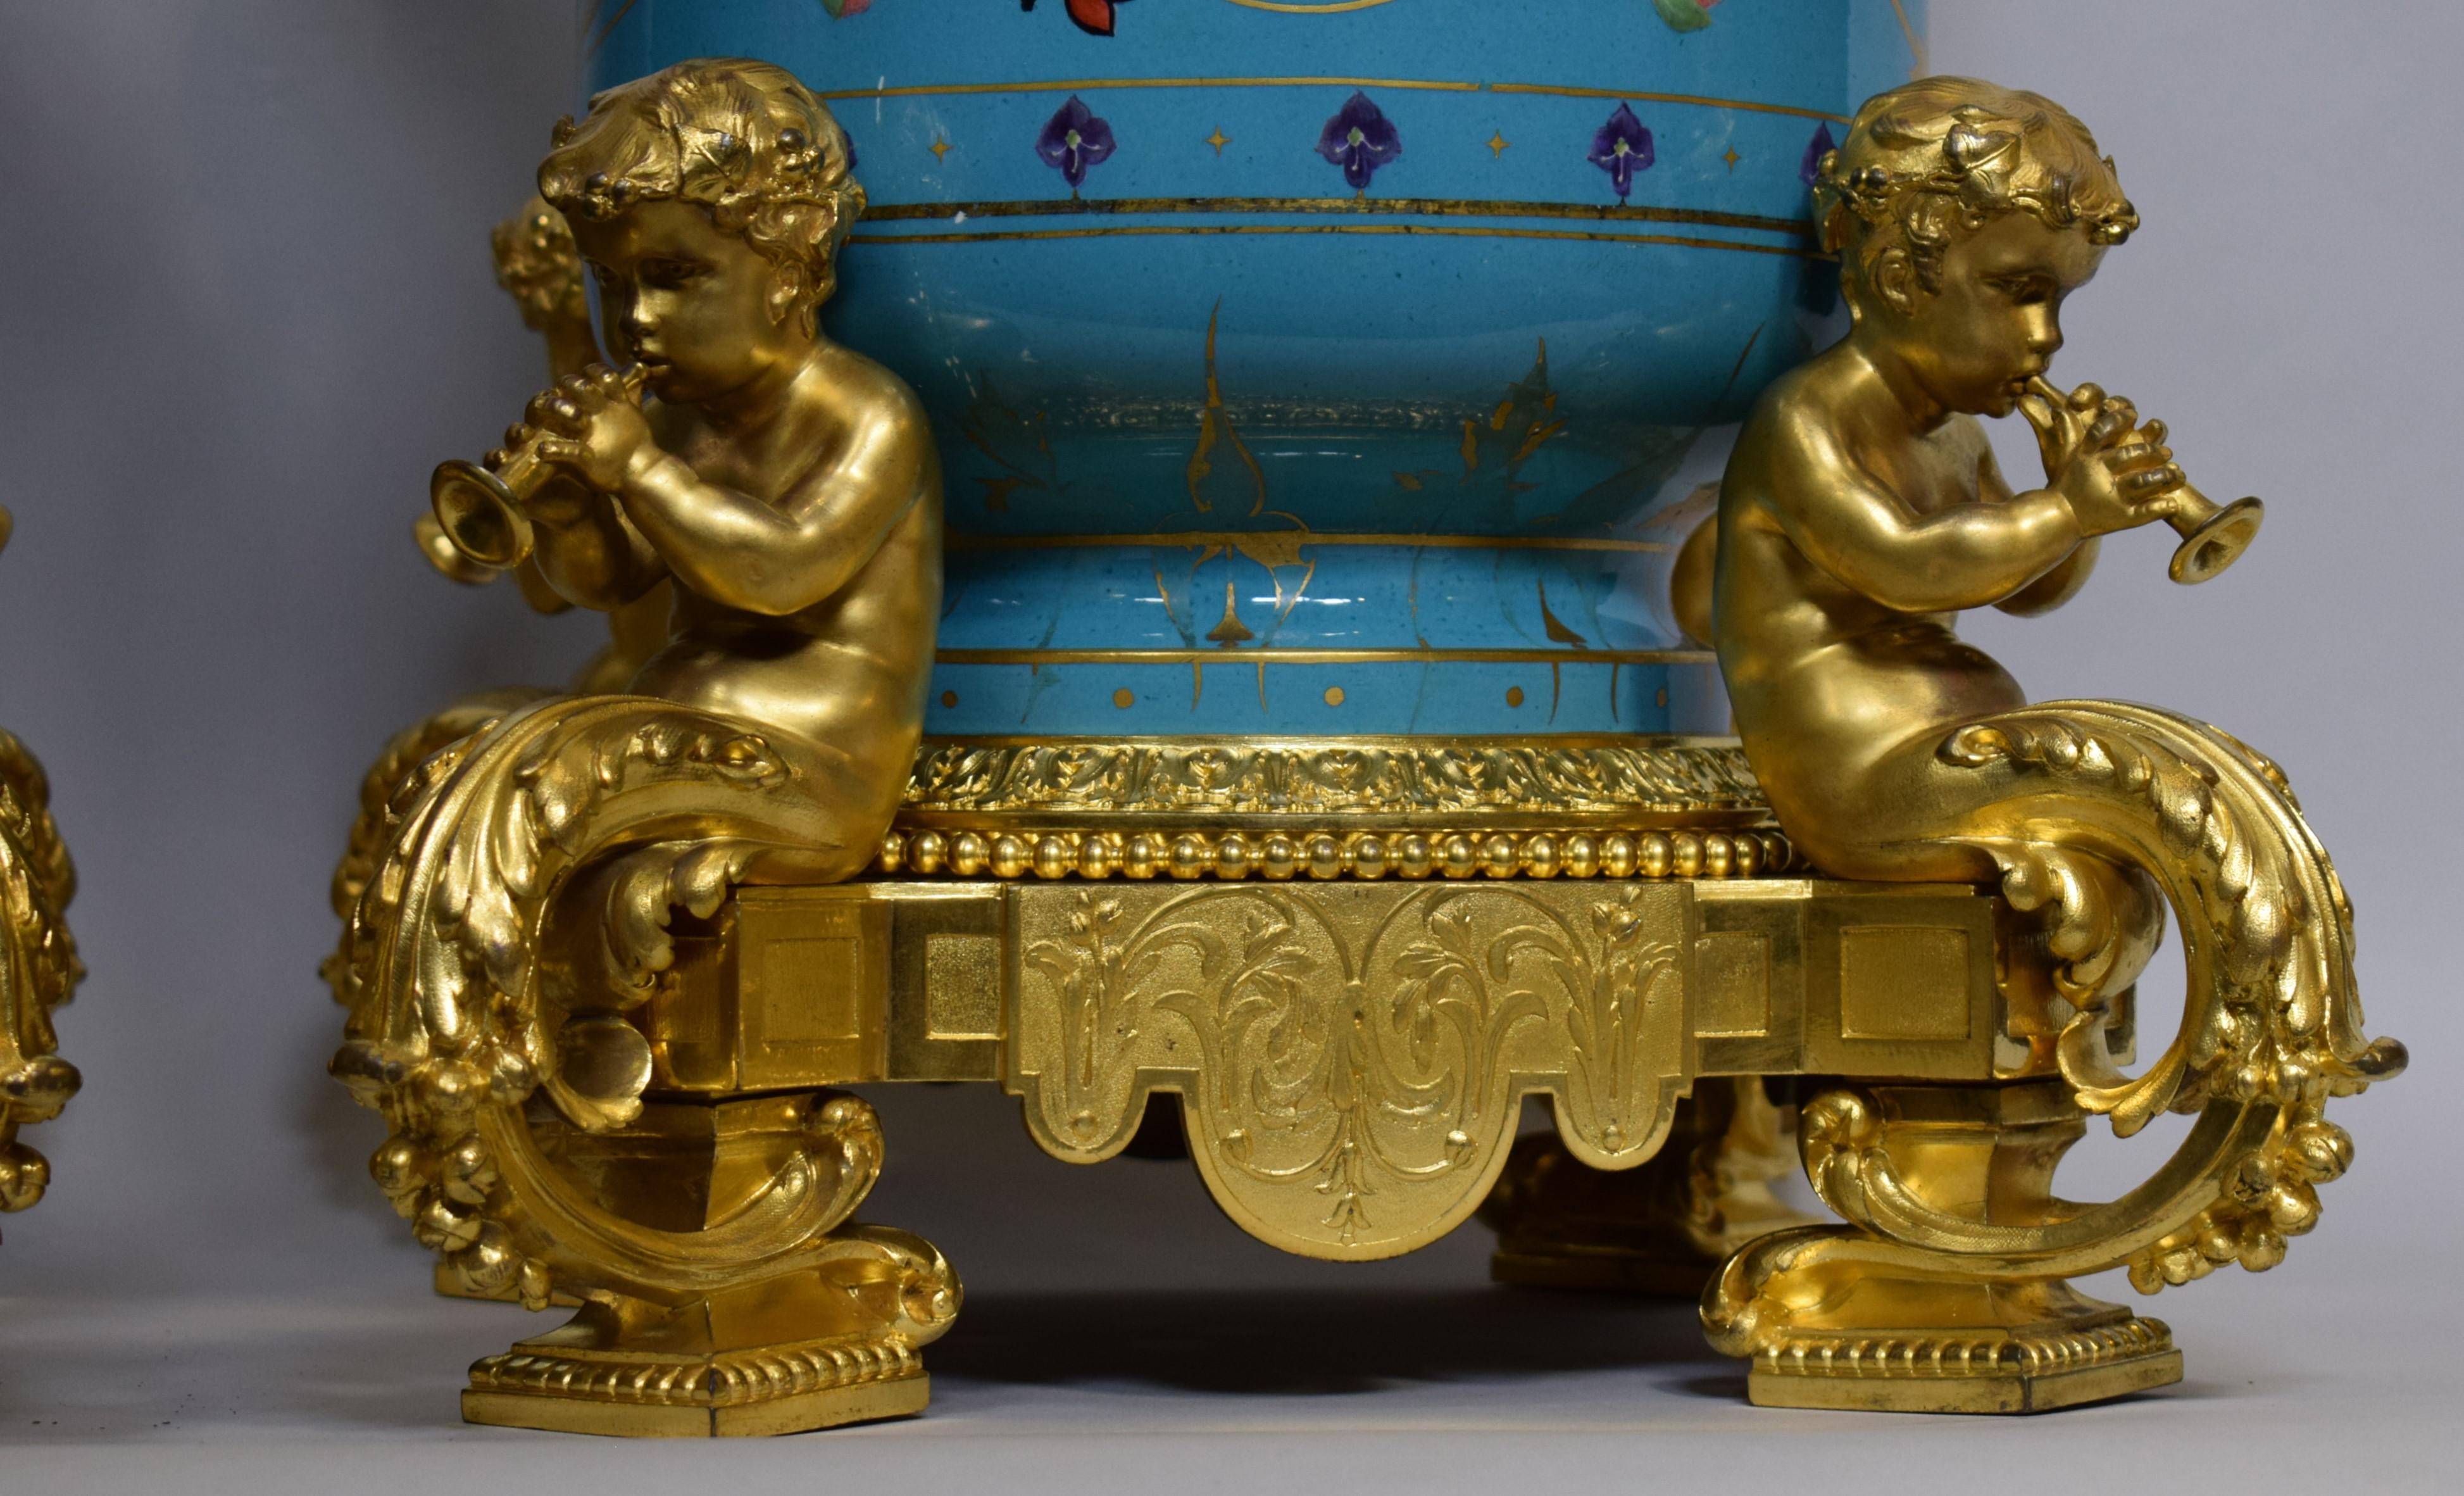 Manufacture de Porcelaine de Sèvres et Victor Paillard (français 1805-1886), milieu ou fin du XIXe siècle. Paire d'urnes en porcelaine à décor floral à fond bleu, peintes par Charles Barriat (français, né en 1821). Les deux pièces ont des bords en